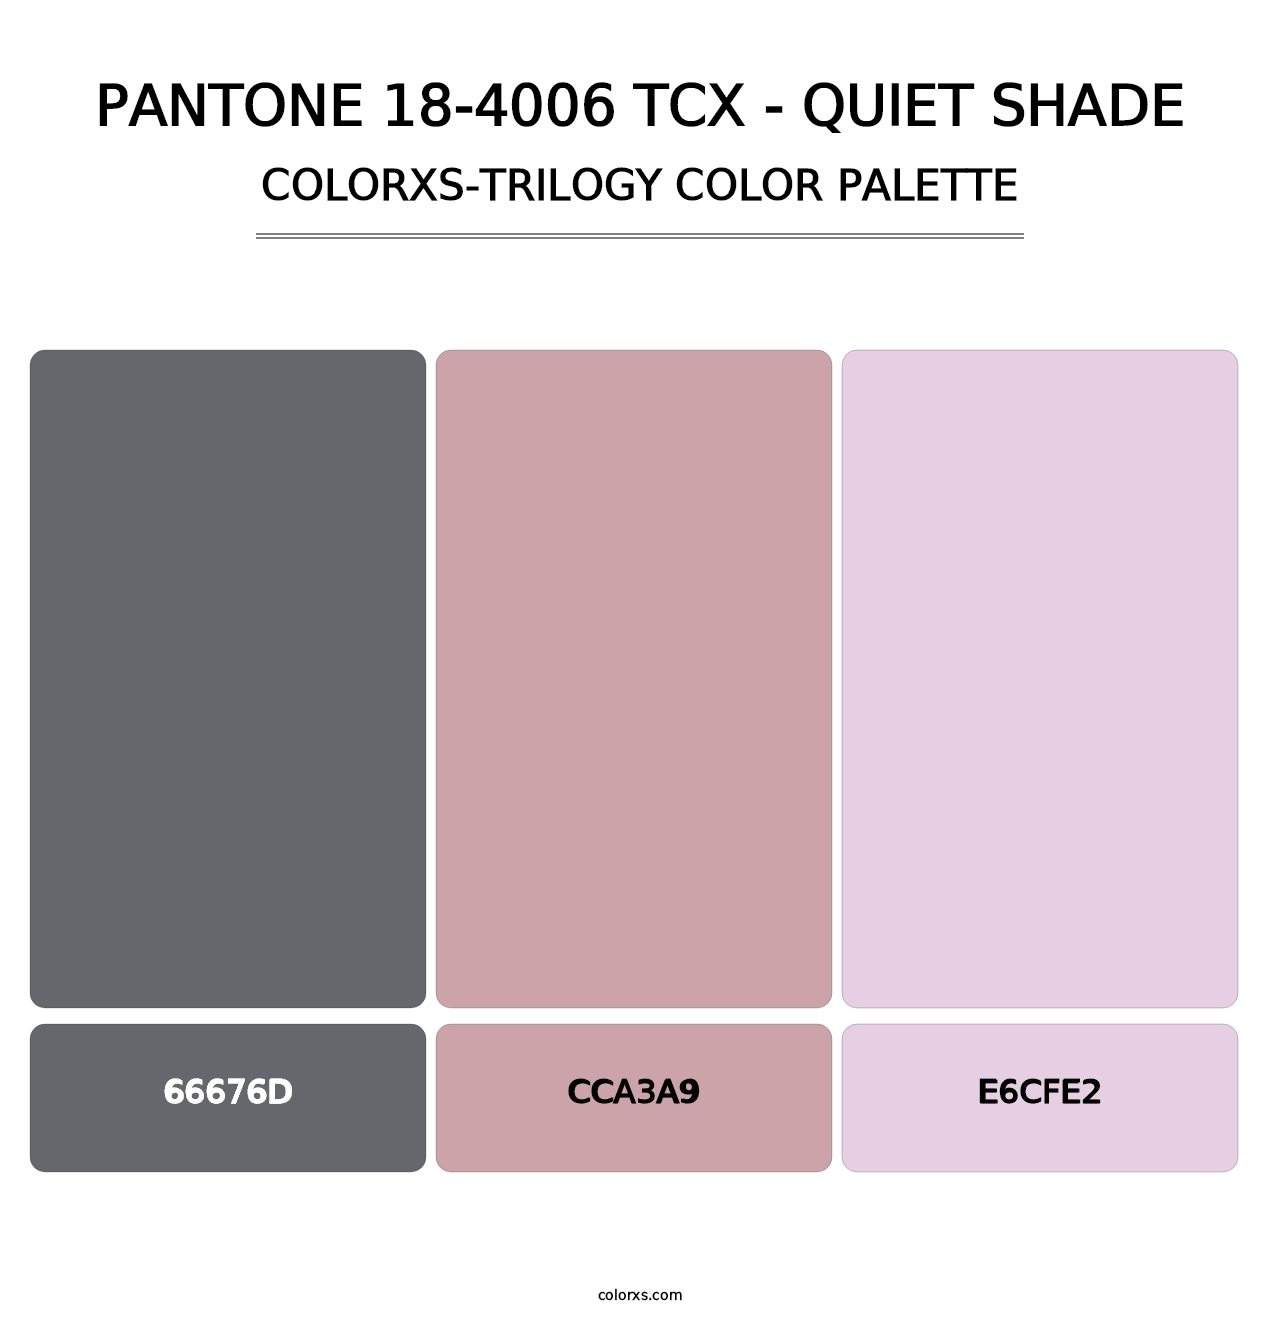 PANTONE 18-4006 TCX - Quiet Shade - Colorxs Trilogy Palette